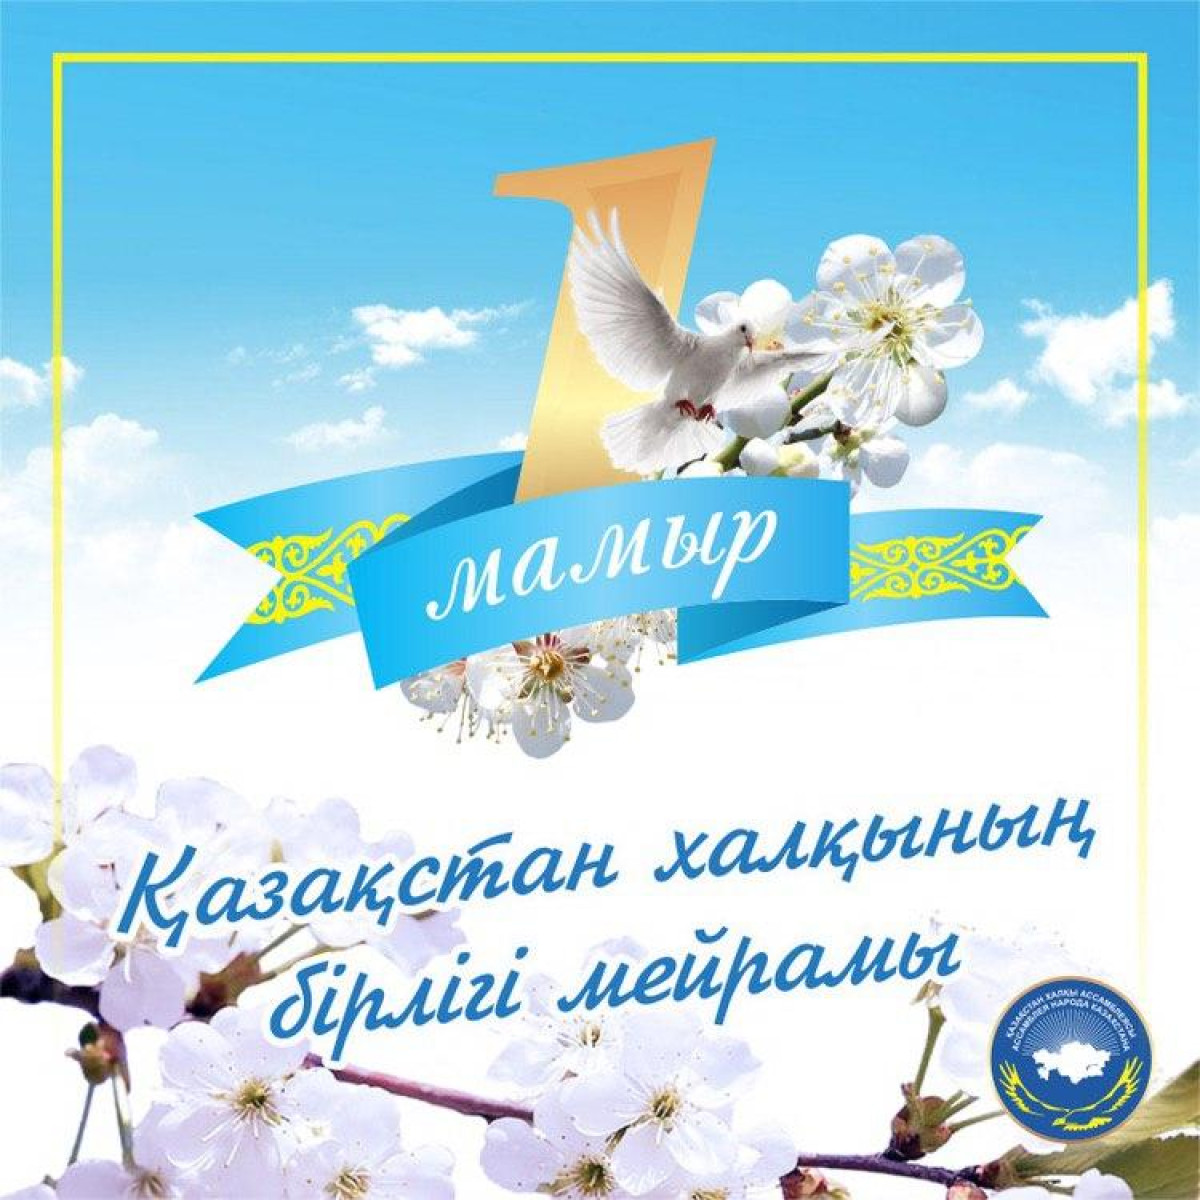 АНК поздравляет с Праздником единства народа Казахстана